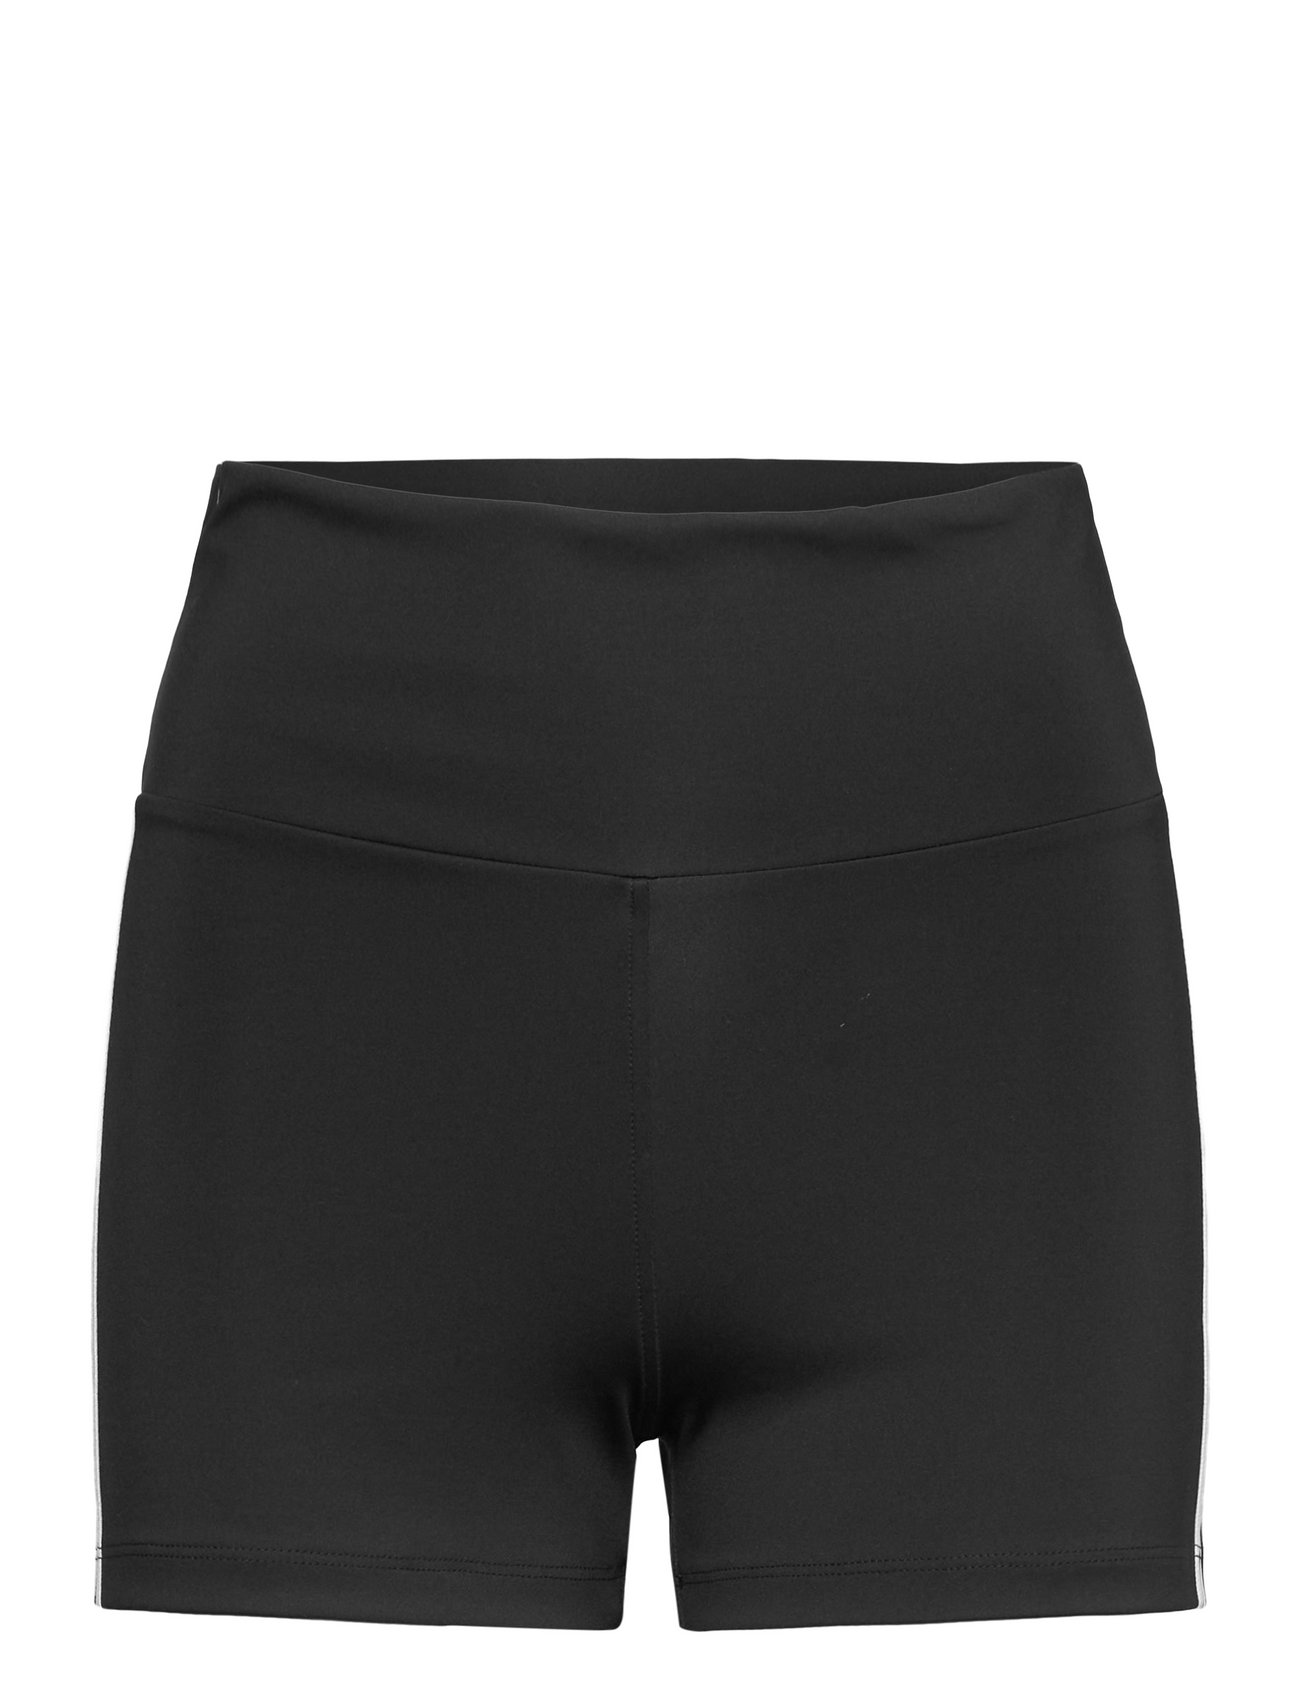 Booty Shorts Sport Shorts Casual Shorts Black Adidas Originals